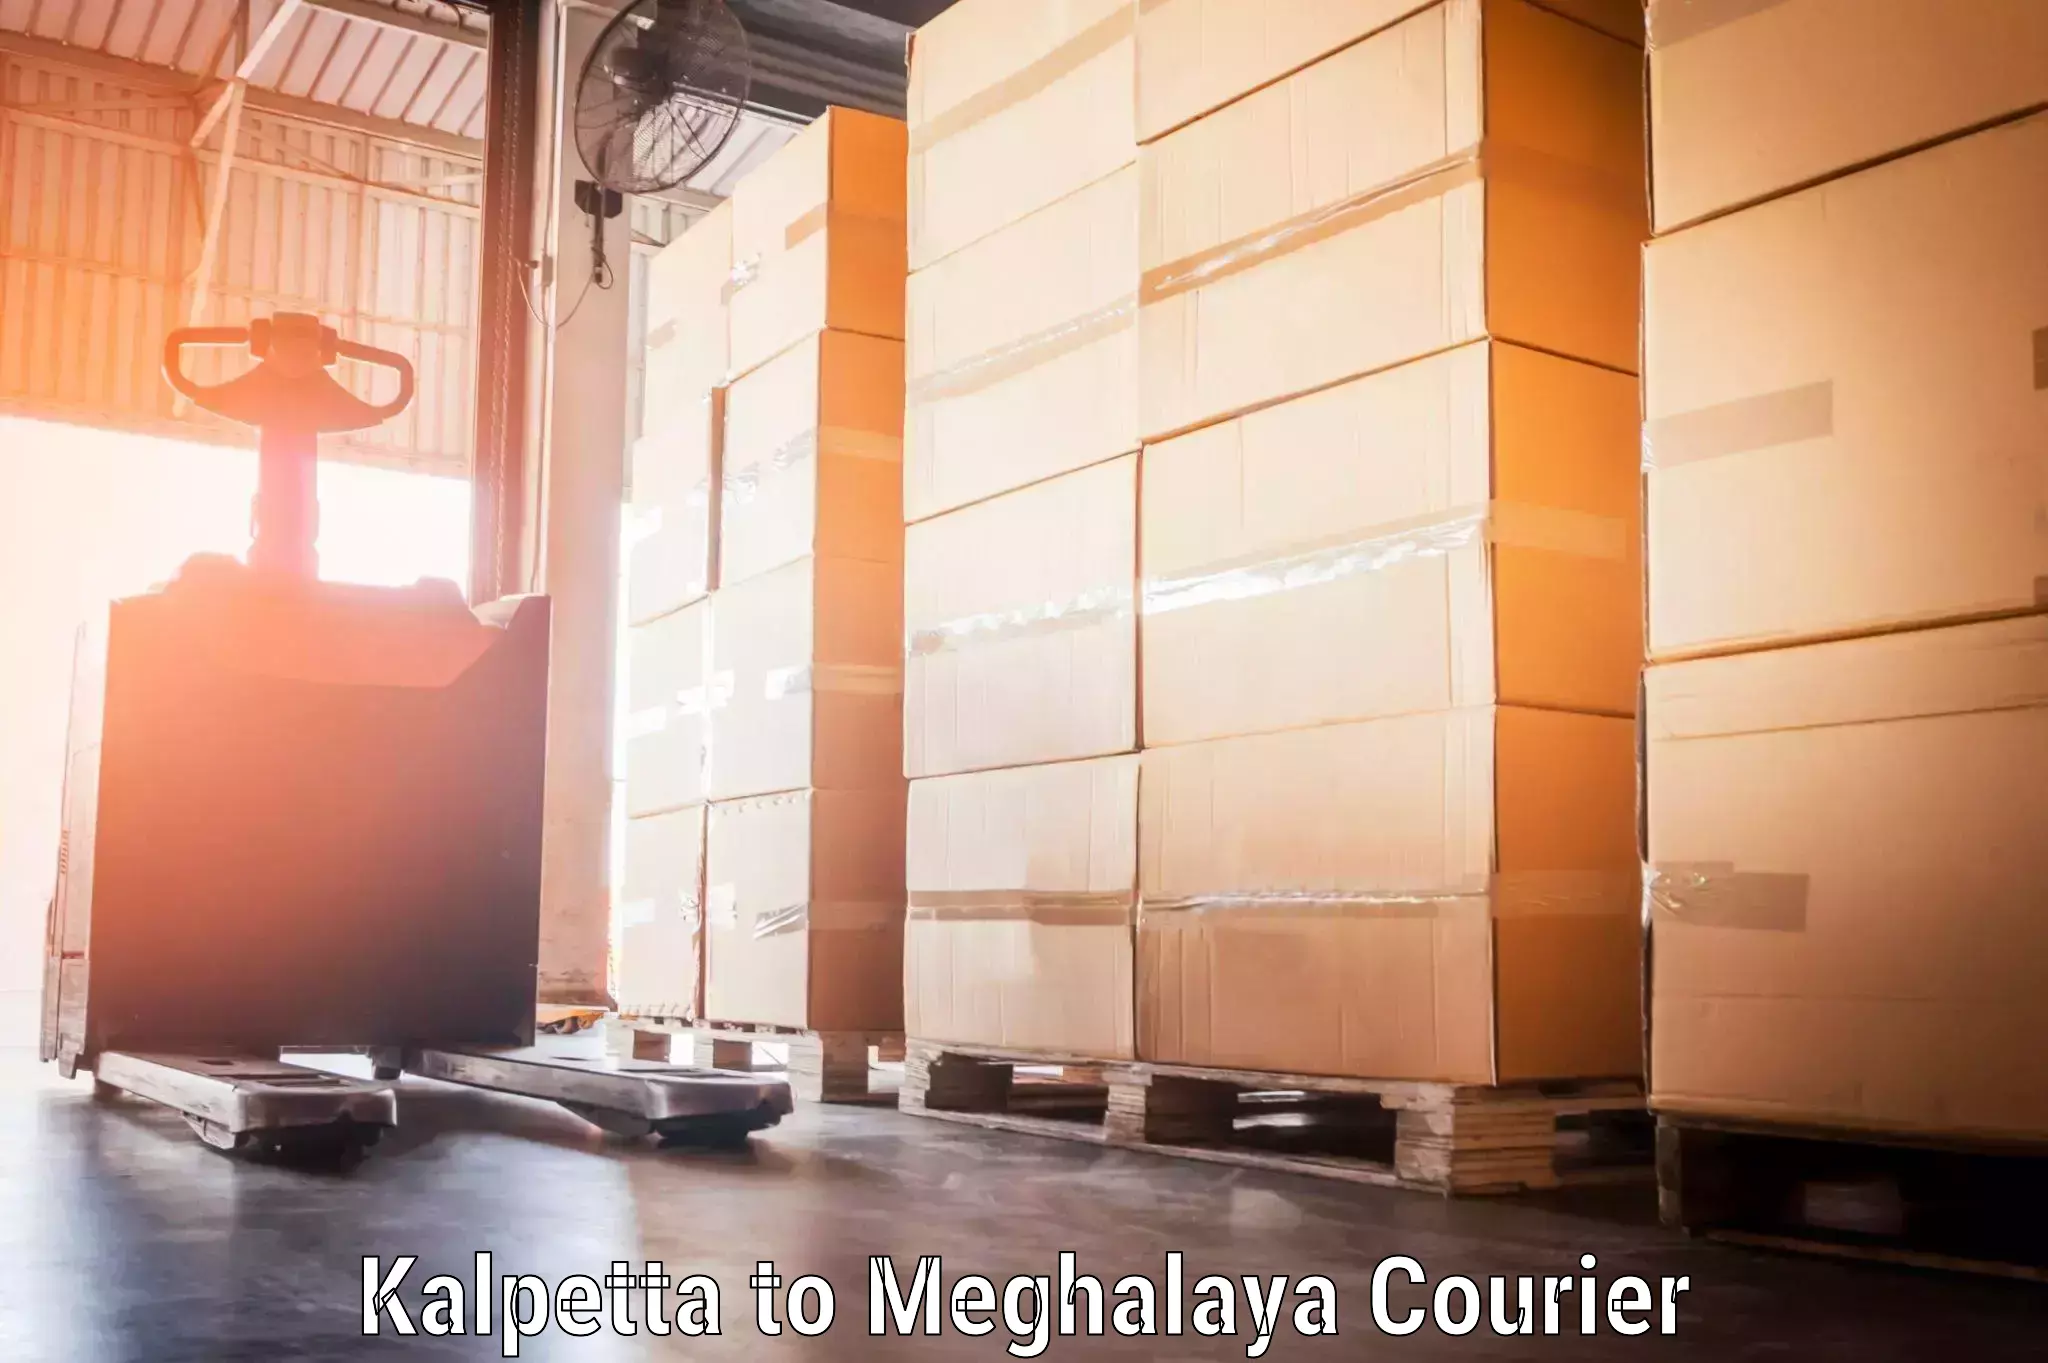 Baggage shipping schedule Kalpetta to Meghalaya